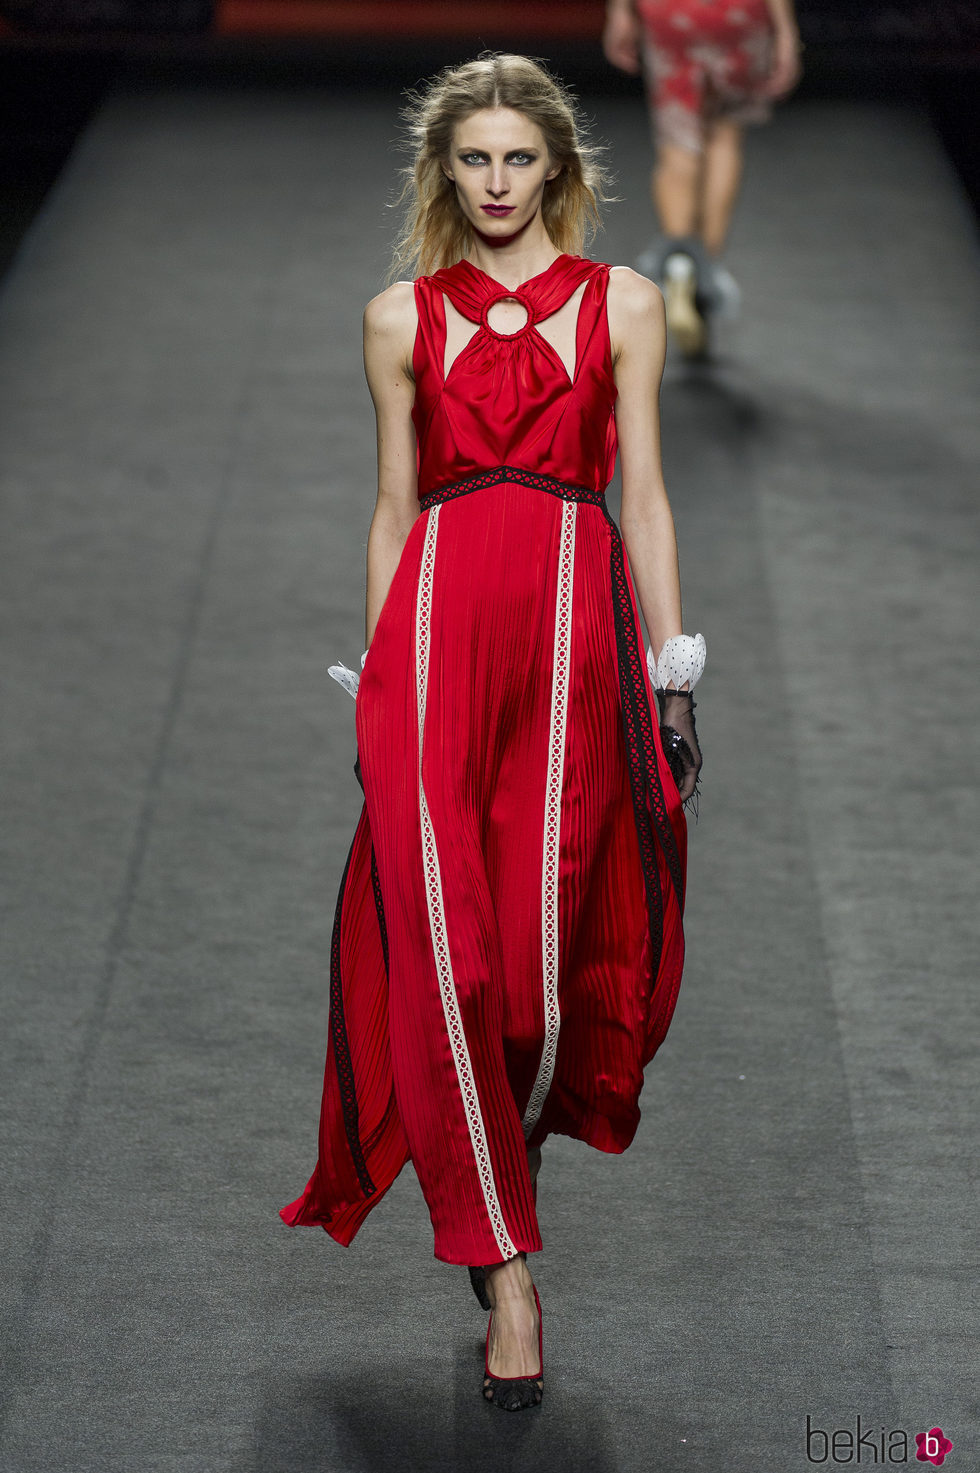 Vestido rojo con cuello cruzado de Ion Fiz en su colección otoño/invierno en la Mercedes Benz Fashion Week Madrid